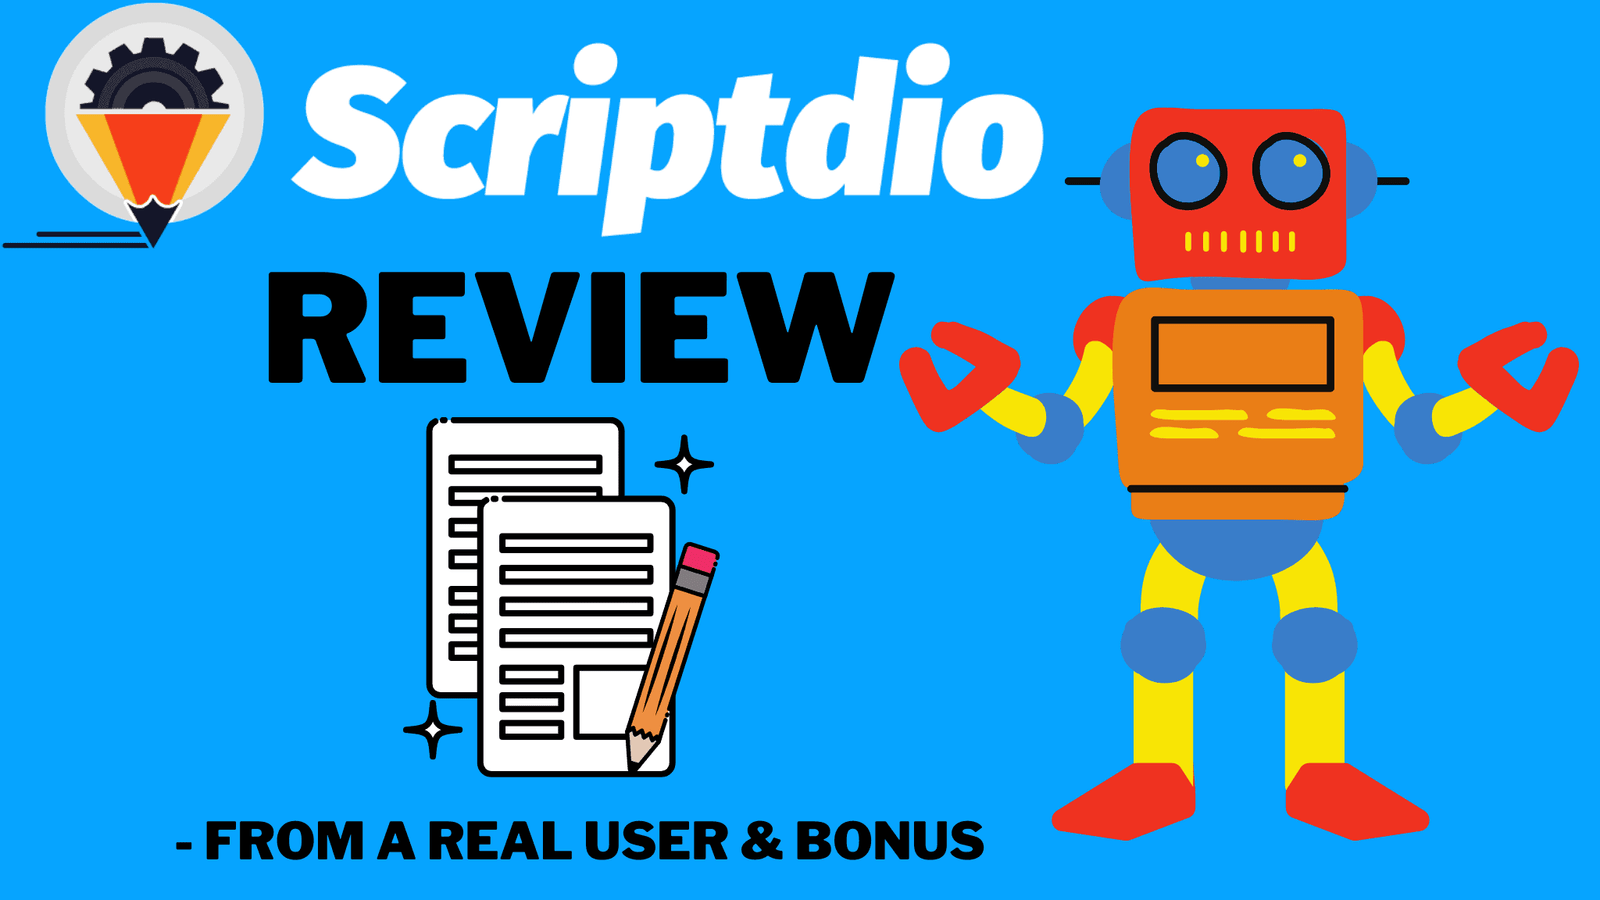 Scriptdio Review